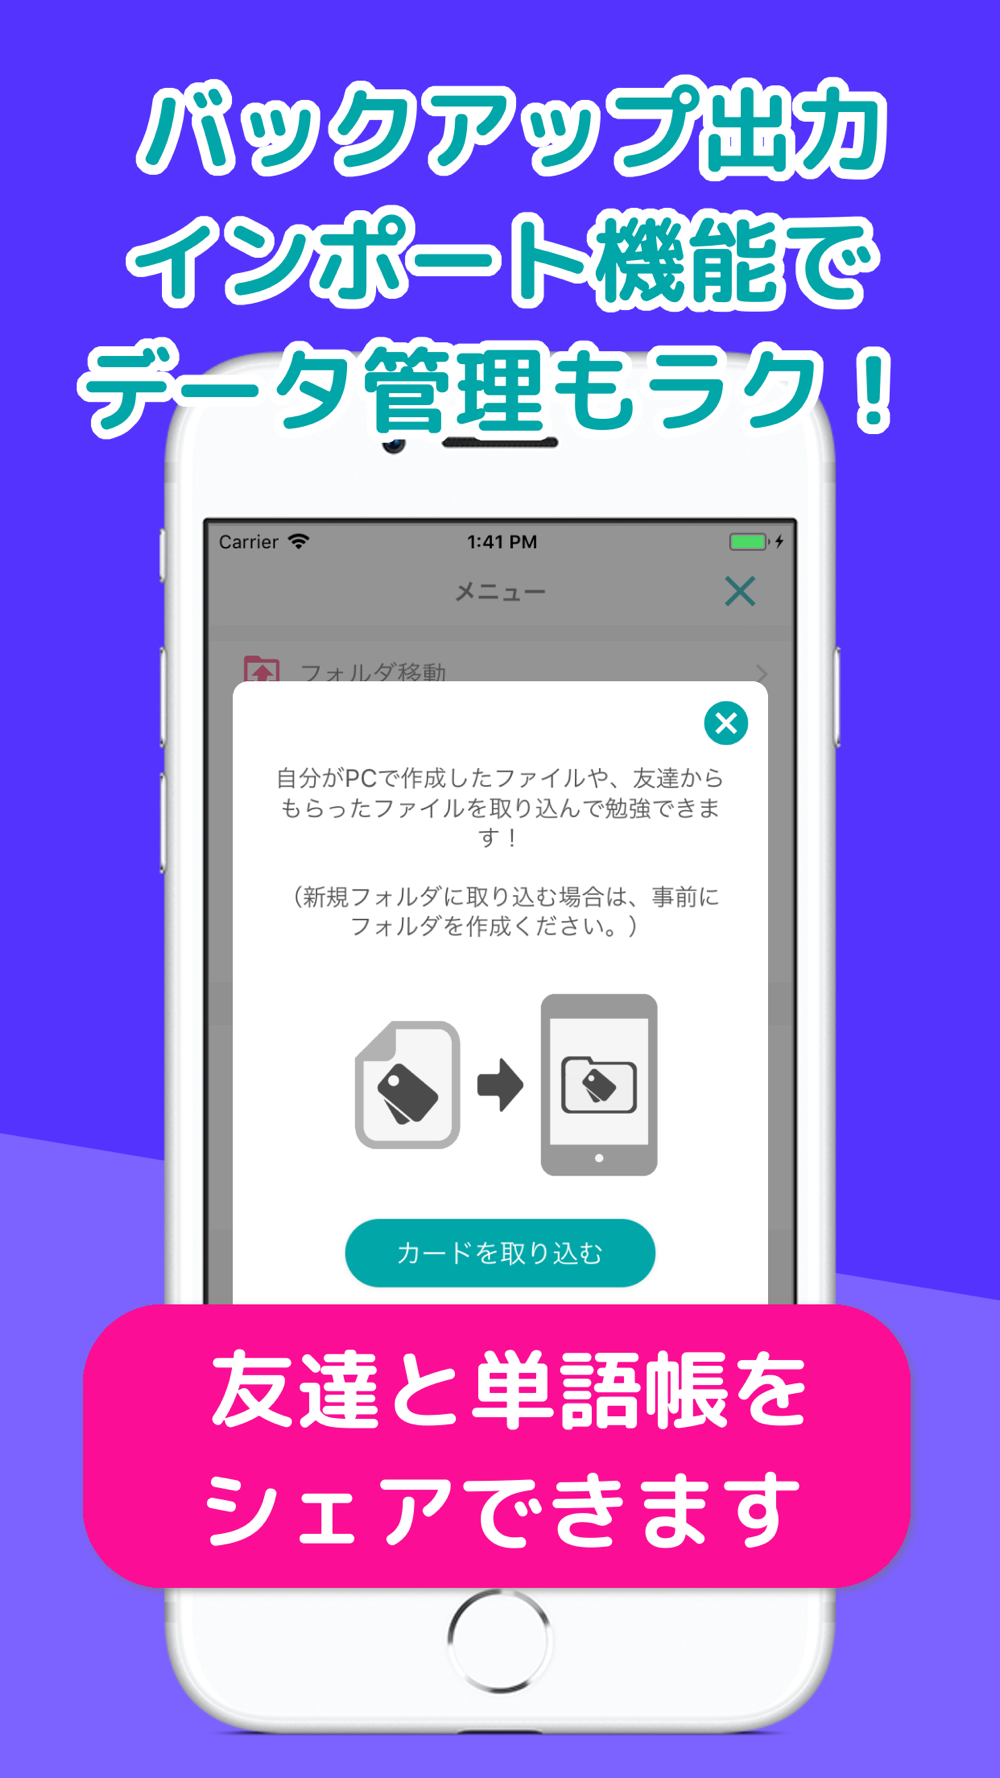 自分で作る単語帳 Wordholic Free Download App For Iphone Steprimo Com